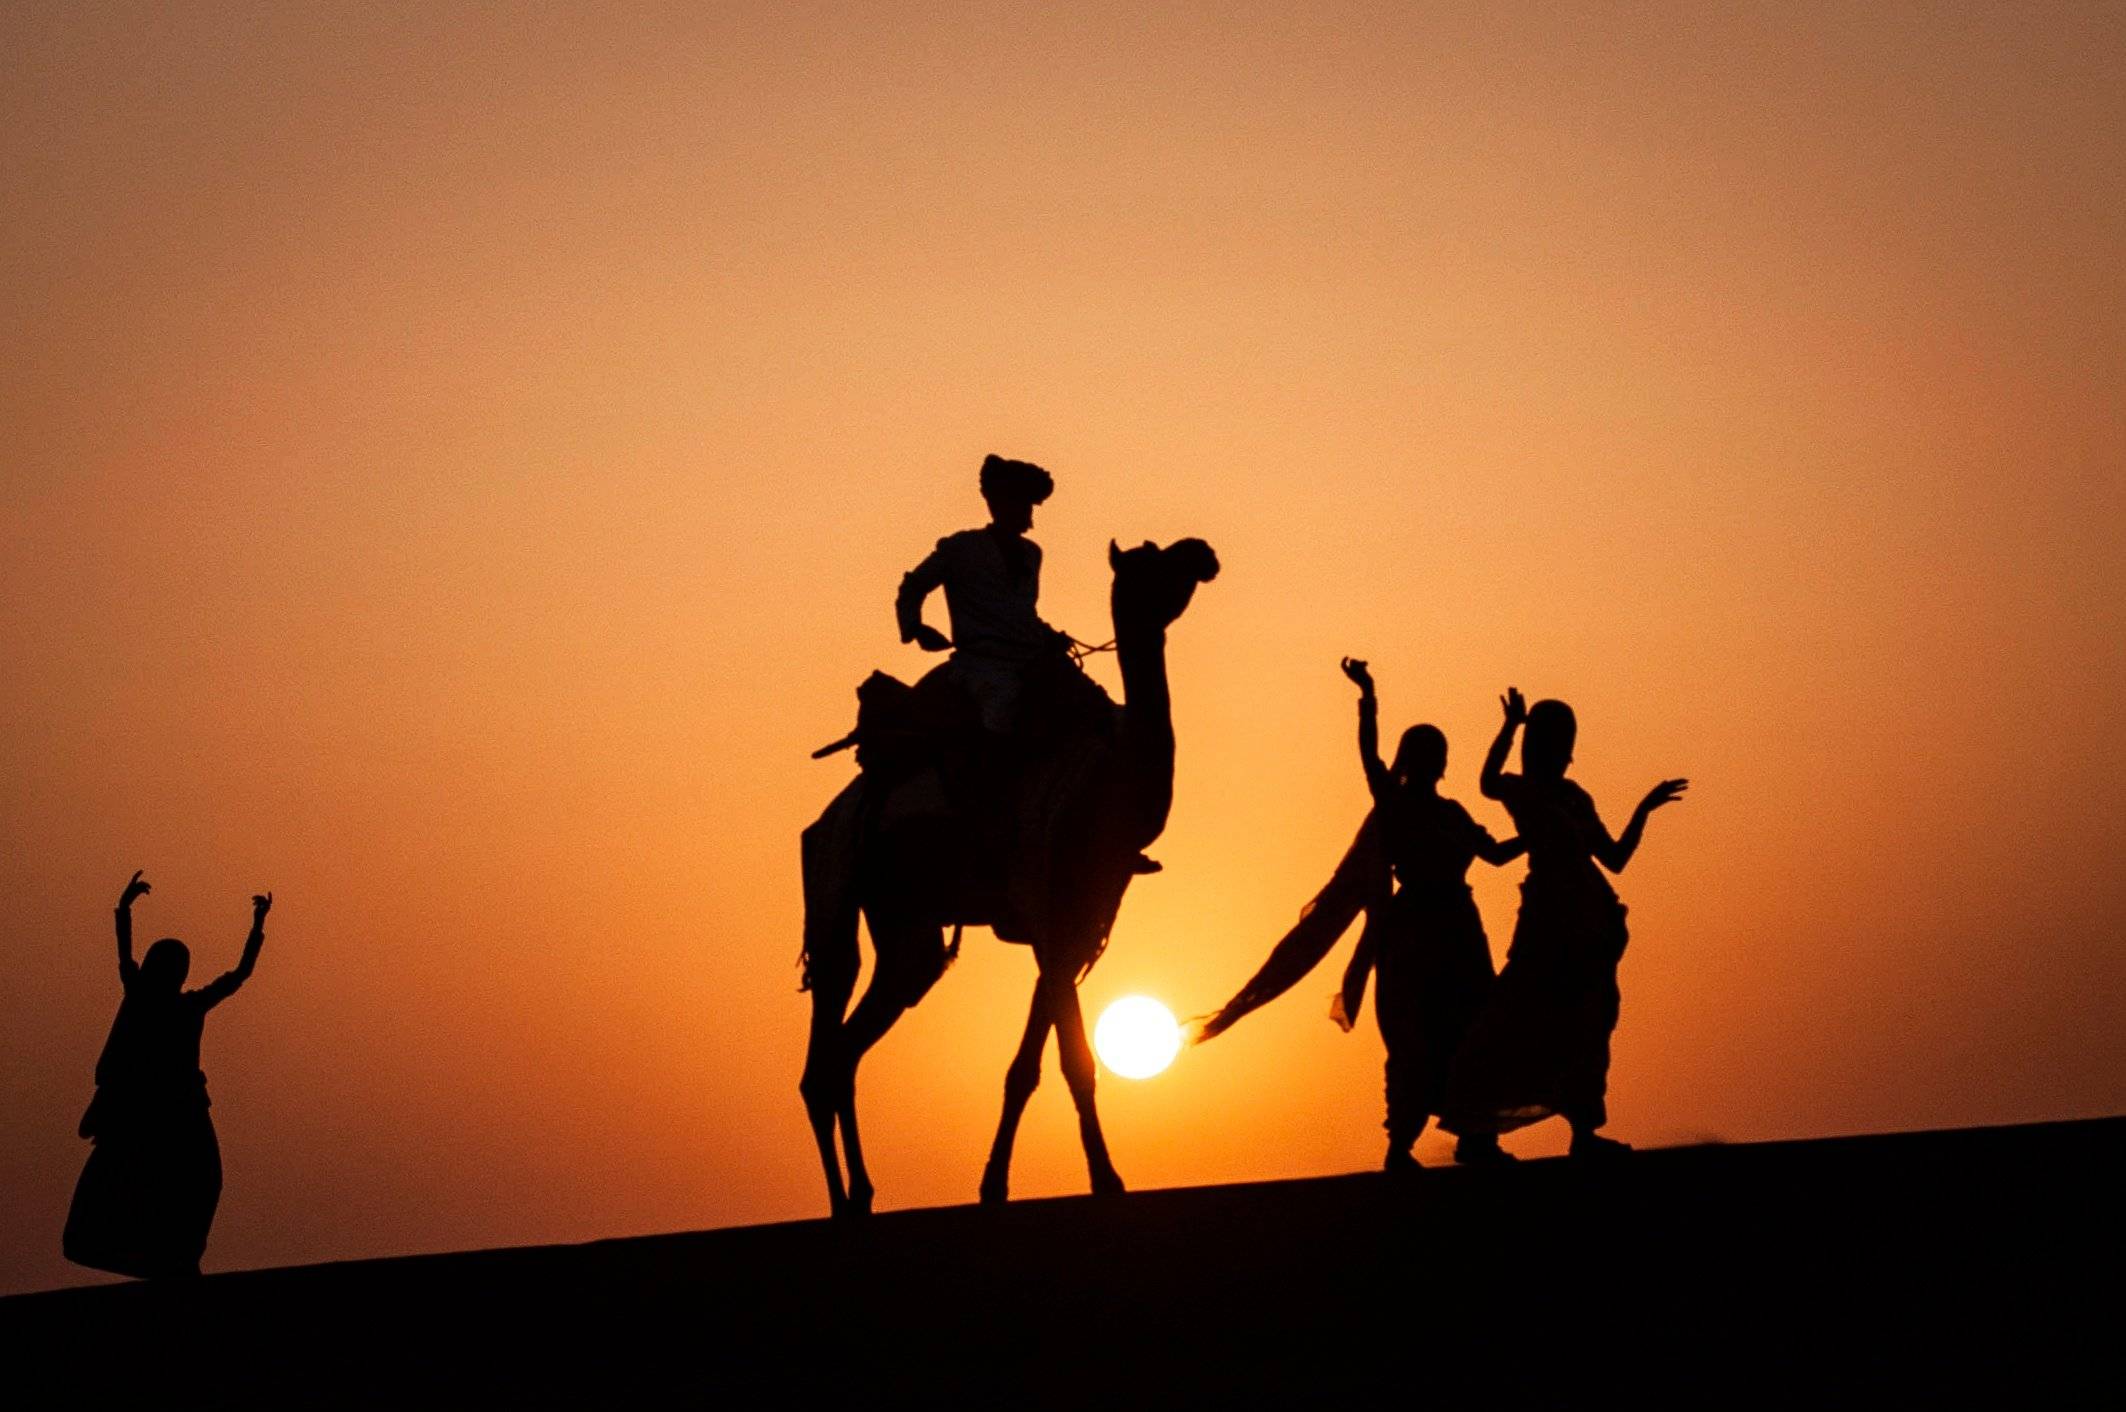 Rajasthan, voyage entre légendes, rêve et réalité